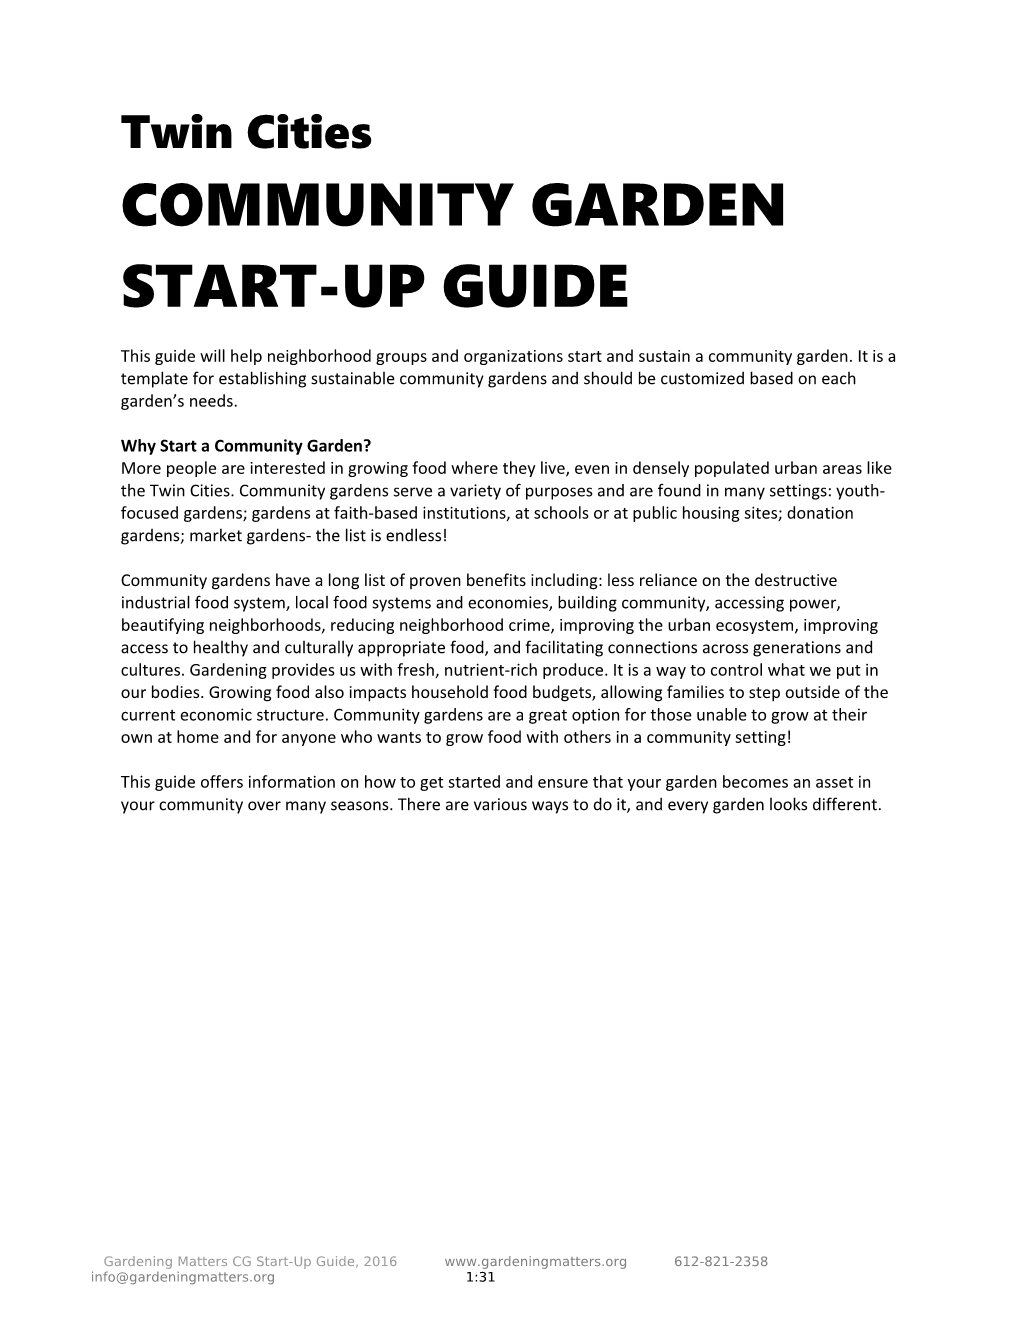 Communitygarden Start-Up Guide